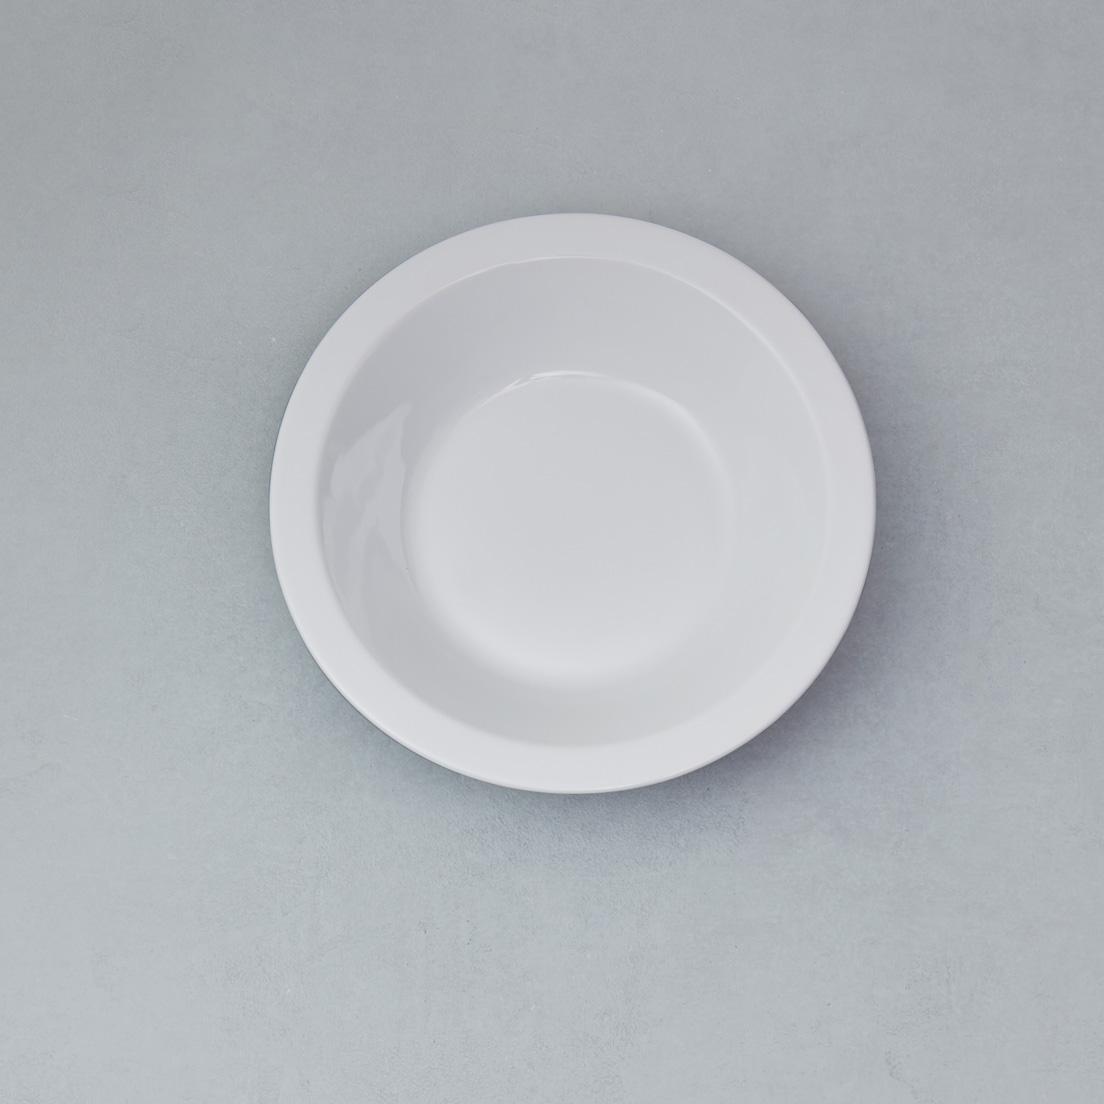 ファインポーセリン〈東京西海〉
 by 山野アンダーソン陽子
スウェーデンで活動するガラス作家の山野アンダーソン陽子がデザインしたテーブルウェアシリーズ。ボウル、オーバル皿、豆皿の３種を展開し、いずれもしっかりとしたリムを持つ。リムのエッジに、ブラウン、グレー、グリーンを彩色したモデルも用意。リムボウル200㎜ホワイト 2,420円（東京西海）。